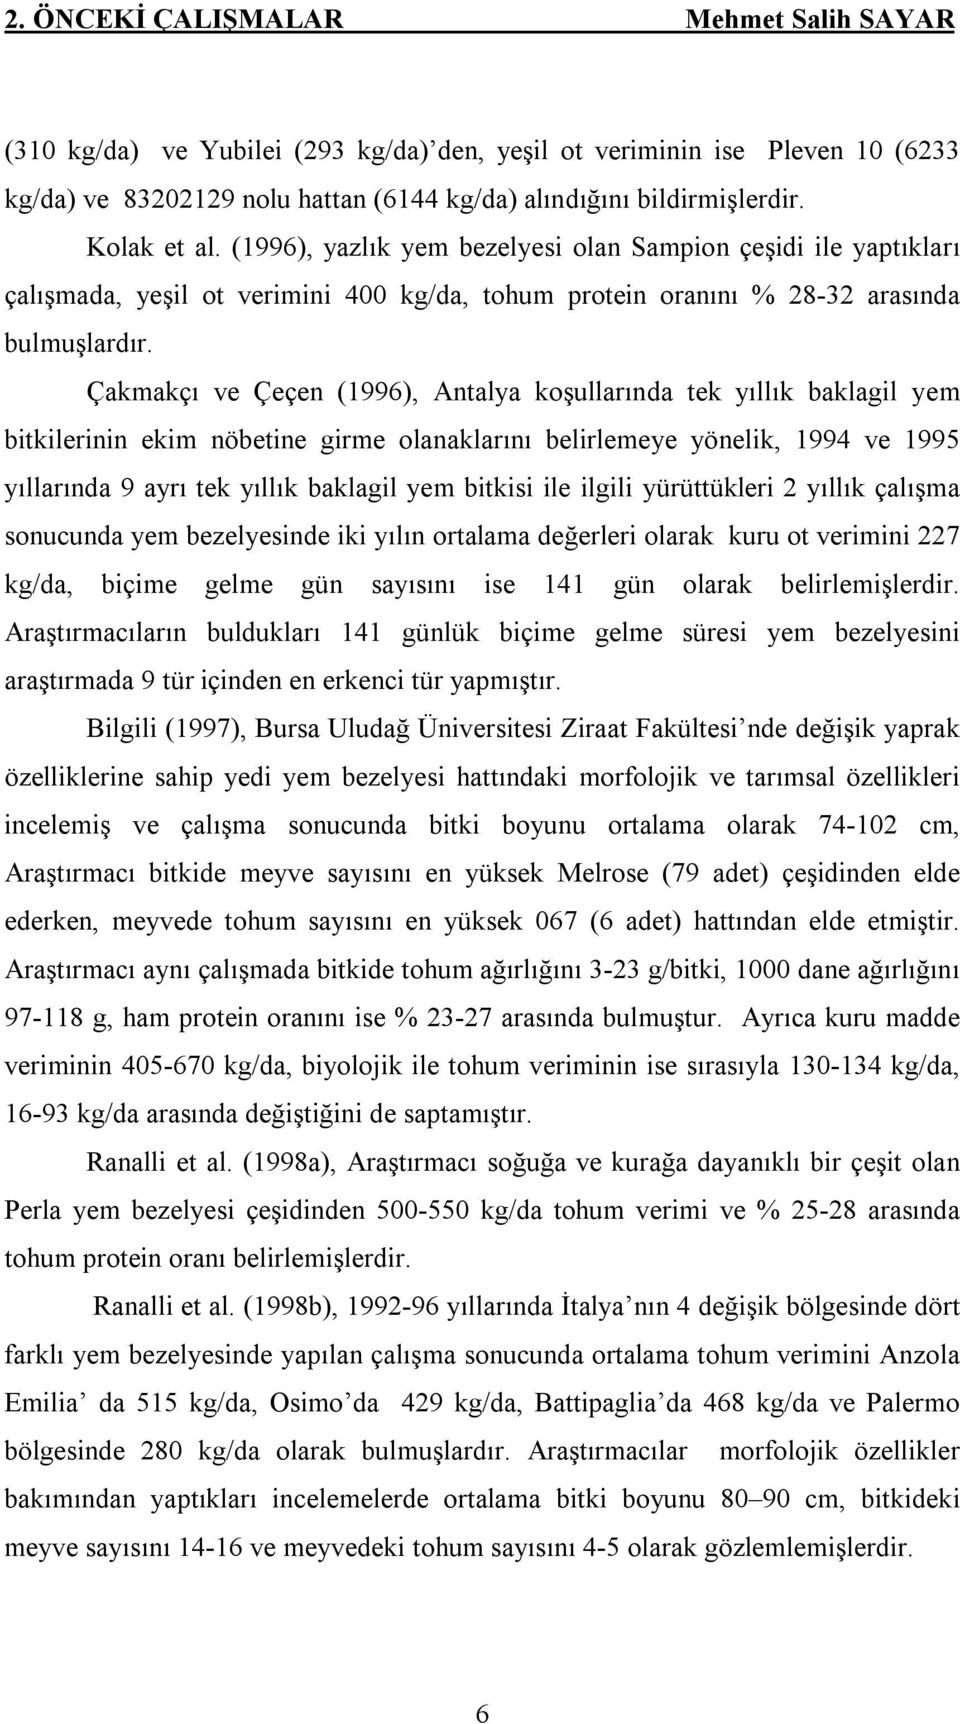 Çakmakçı ve Çeçen (1996), Antalya koşullarında tek yıllık baklagil yem bitkilerinin ekim nöbetine girme olanaklarını belirlemeye yönelik, 1994 ve 1995 yıllarında 9 ayrı tek yıllık baklagil yem